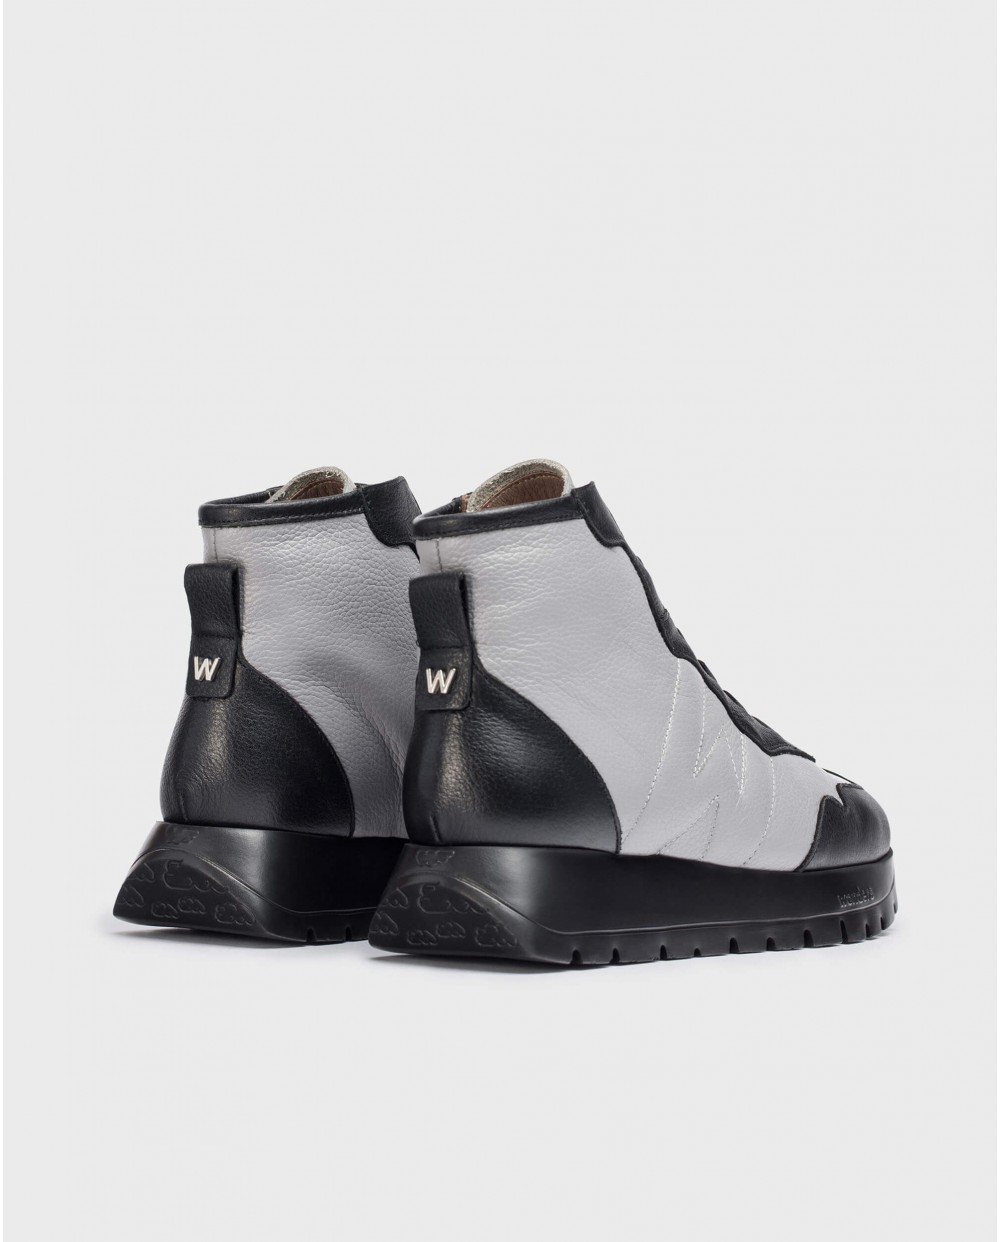 Wonders-Sneakers-England grey ankle boot